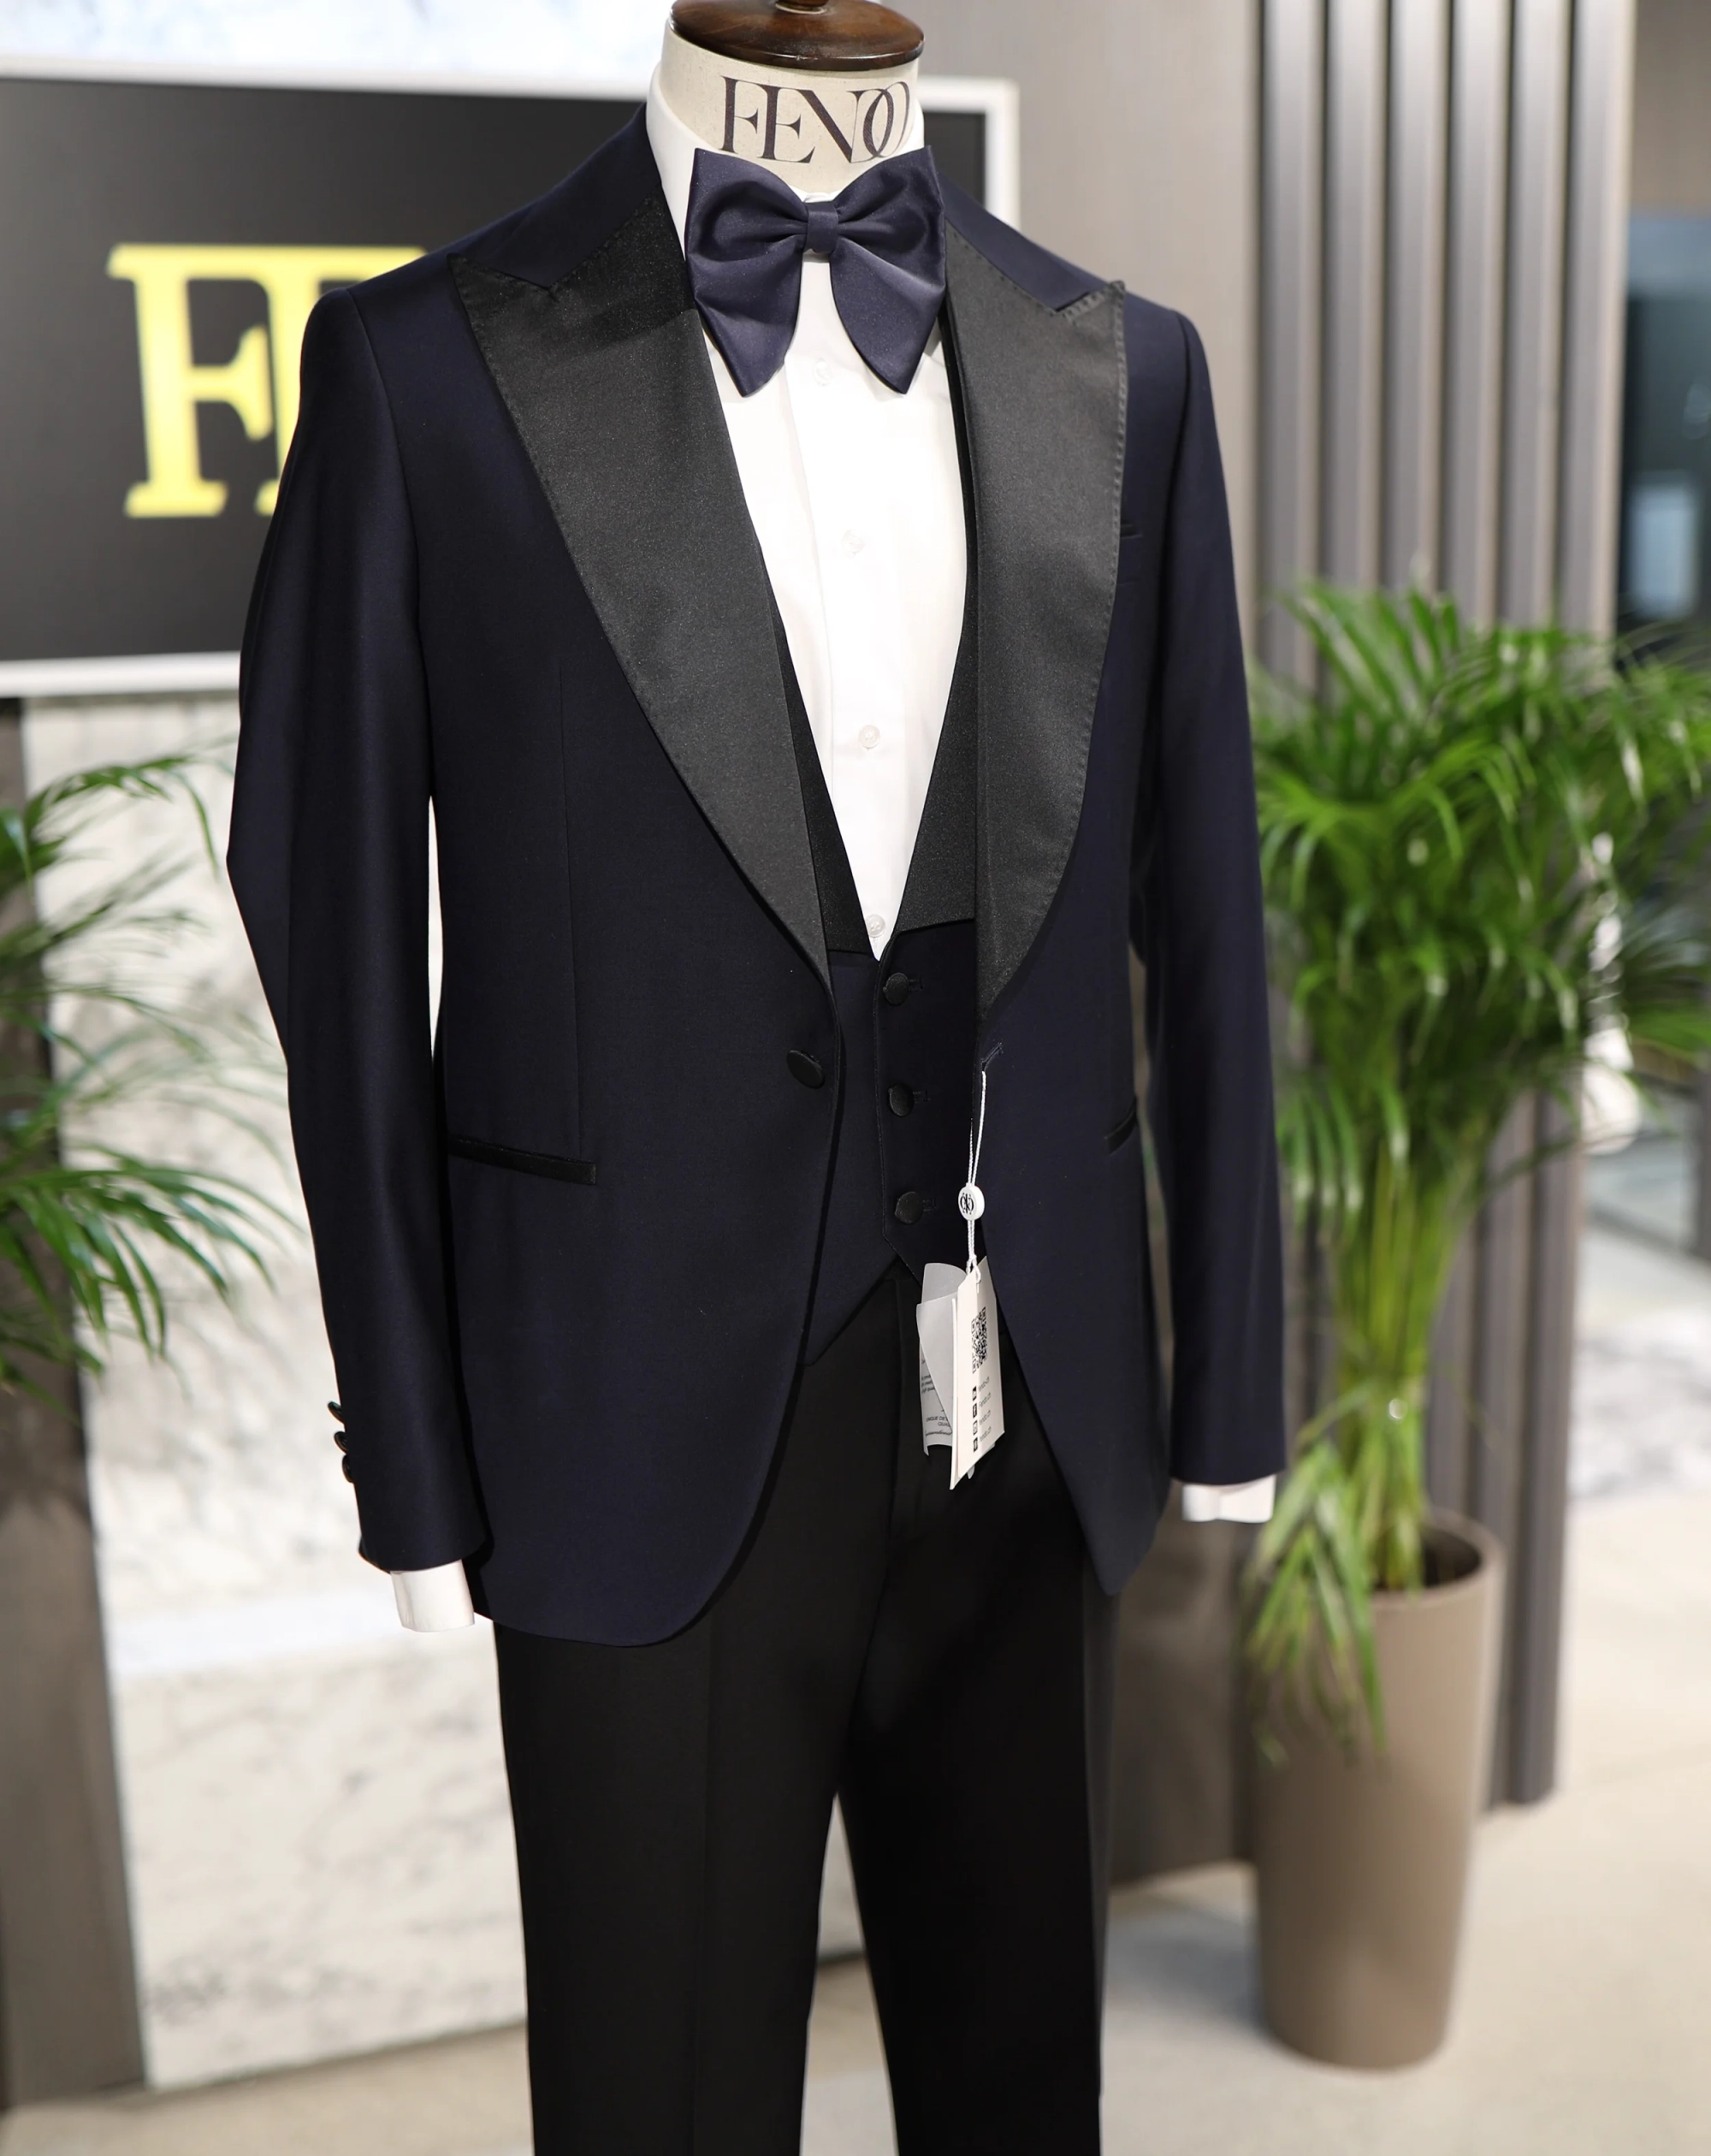 Allschwil dark blue three-piece tuxedo suit for mens